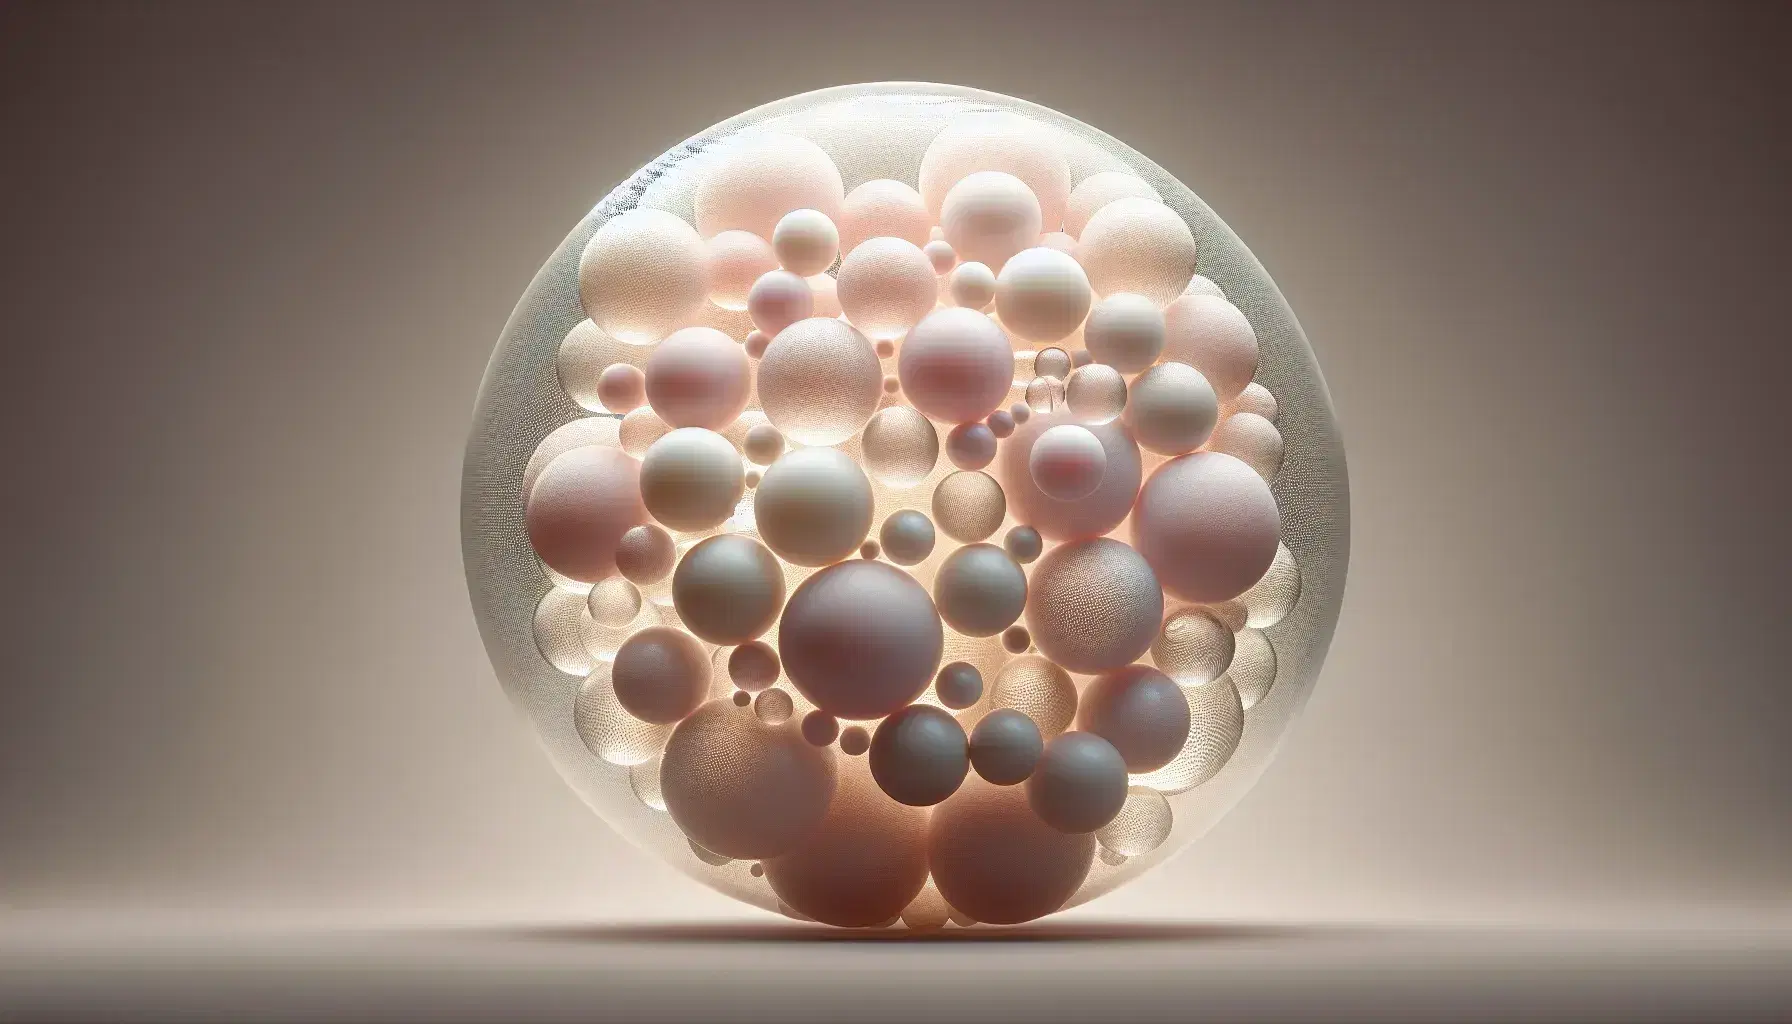 Esferas translúcidas en tonos de rosa, con esferas más pequeñas suspendidas en su interior, sobre fondo gris neutro y suave iluminación que realza su textura lisa y brillo tenue.